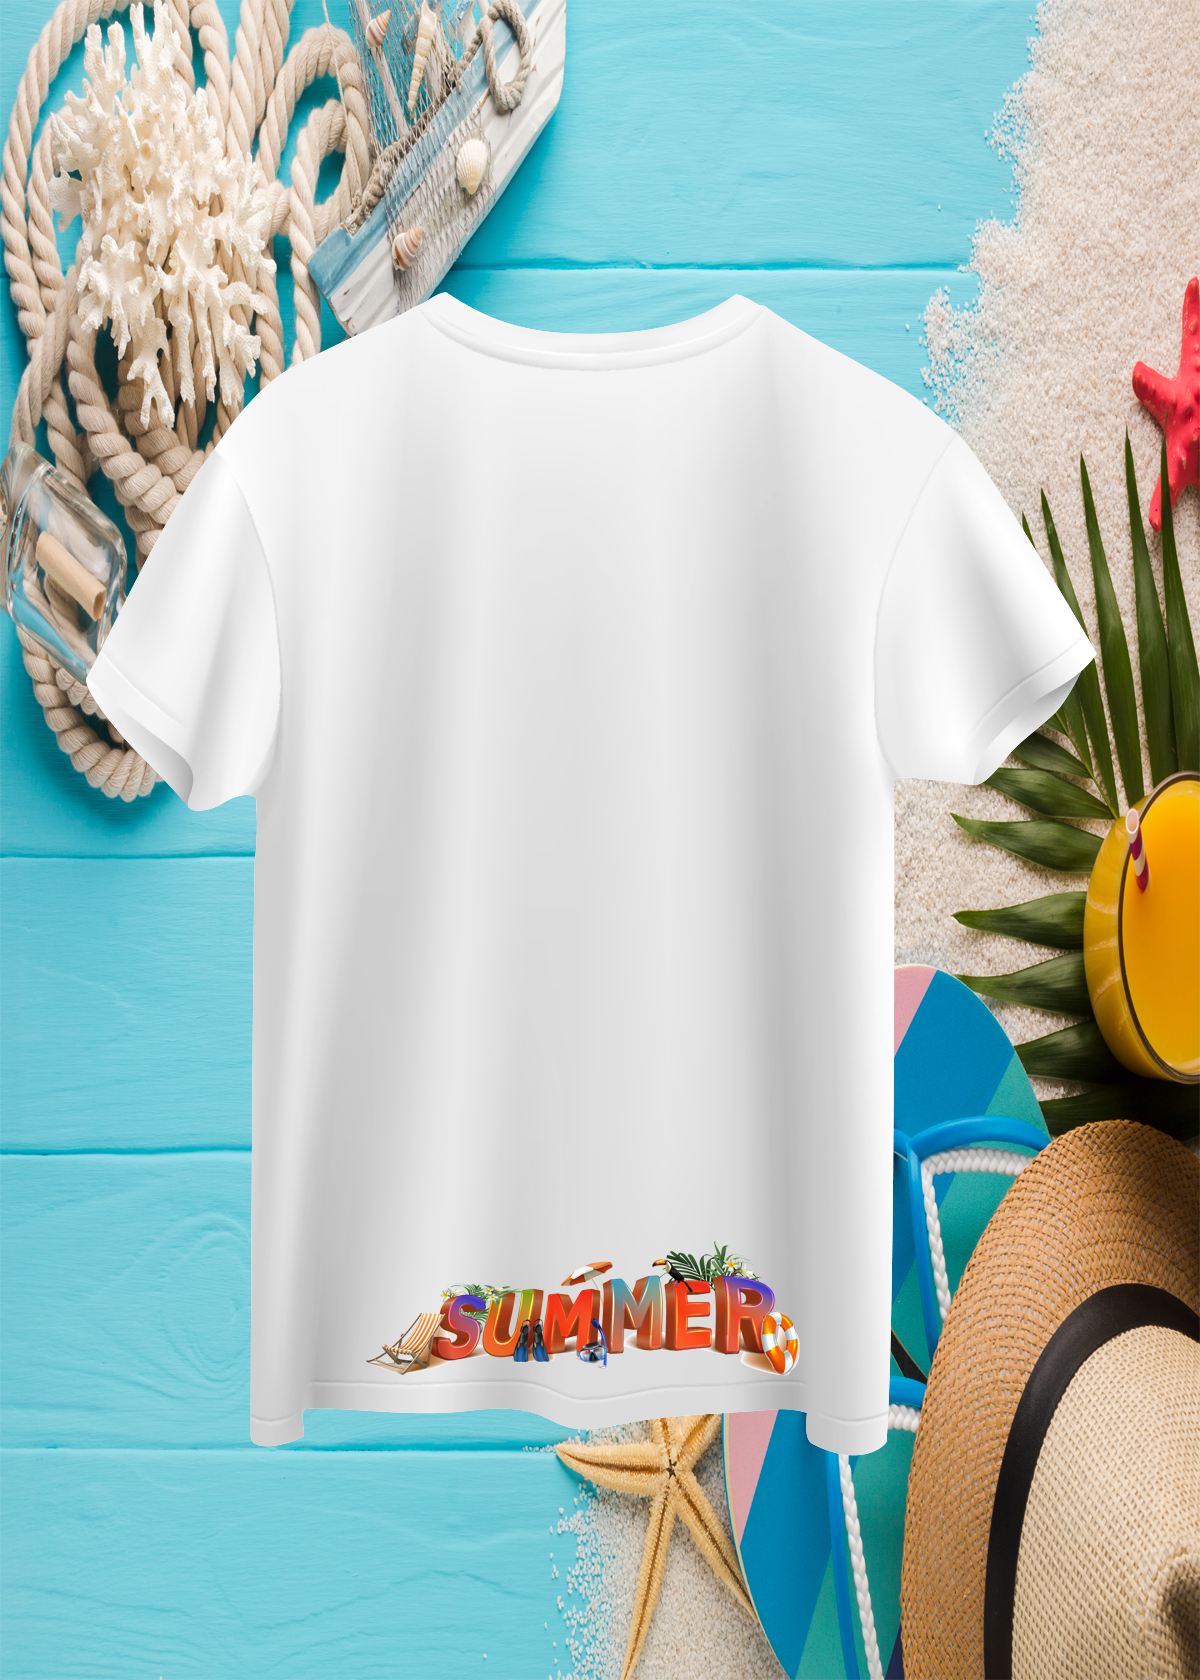 Crea-tshirt ‘Summer ’ Arka Etek Ucu baskılı Bisiklet Yaka Beyaz  Erkek T-shirt 